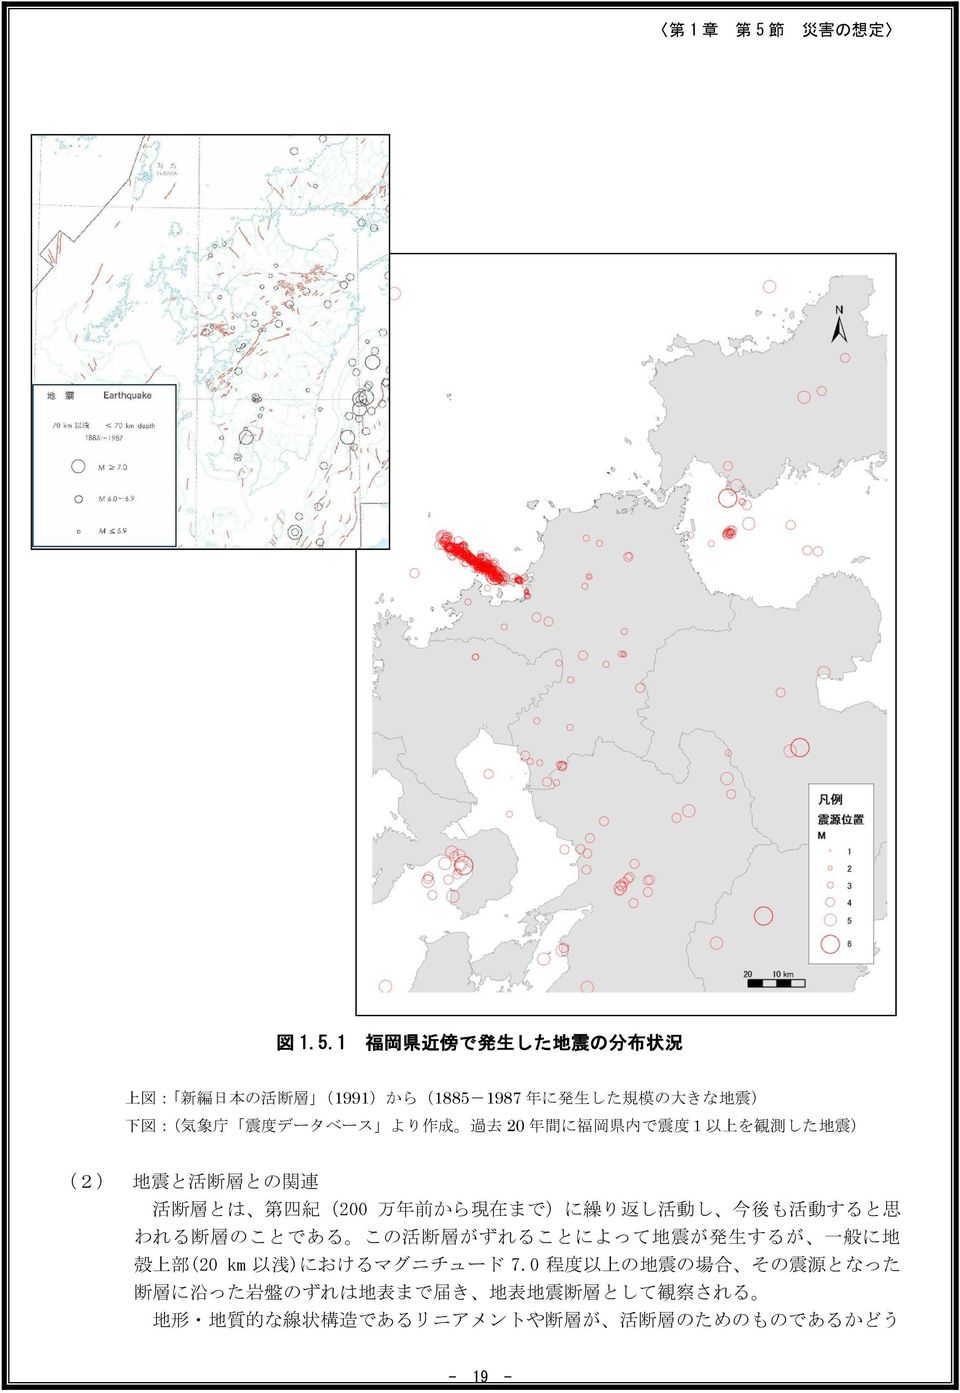 より 作 成 過 去 20 年 間 に 福 岡 県 内 で 震 度 1 以 上 を 観 測 した 地 震 ) (2) 地 震 と 活 断 層 との 関 連 活 断 層 とは 第 四 紀 (200 万 年 前 から 現 在 まで)に 繰 り 返 し 活 動 し